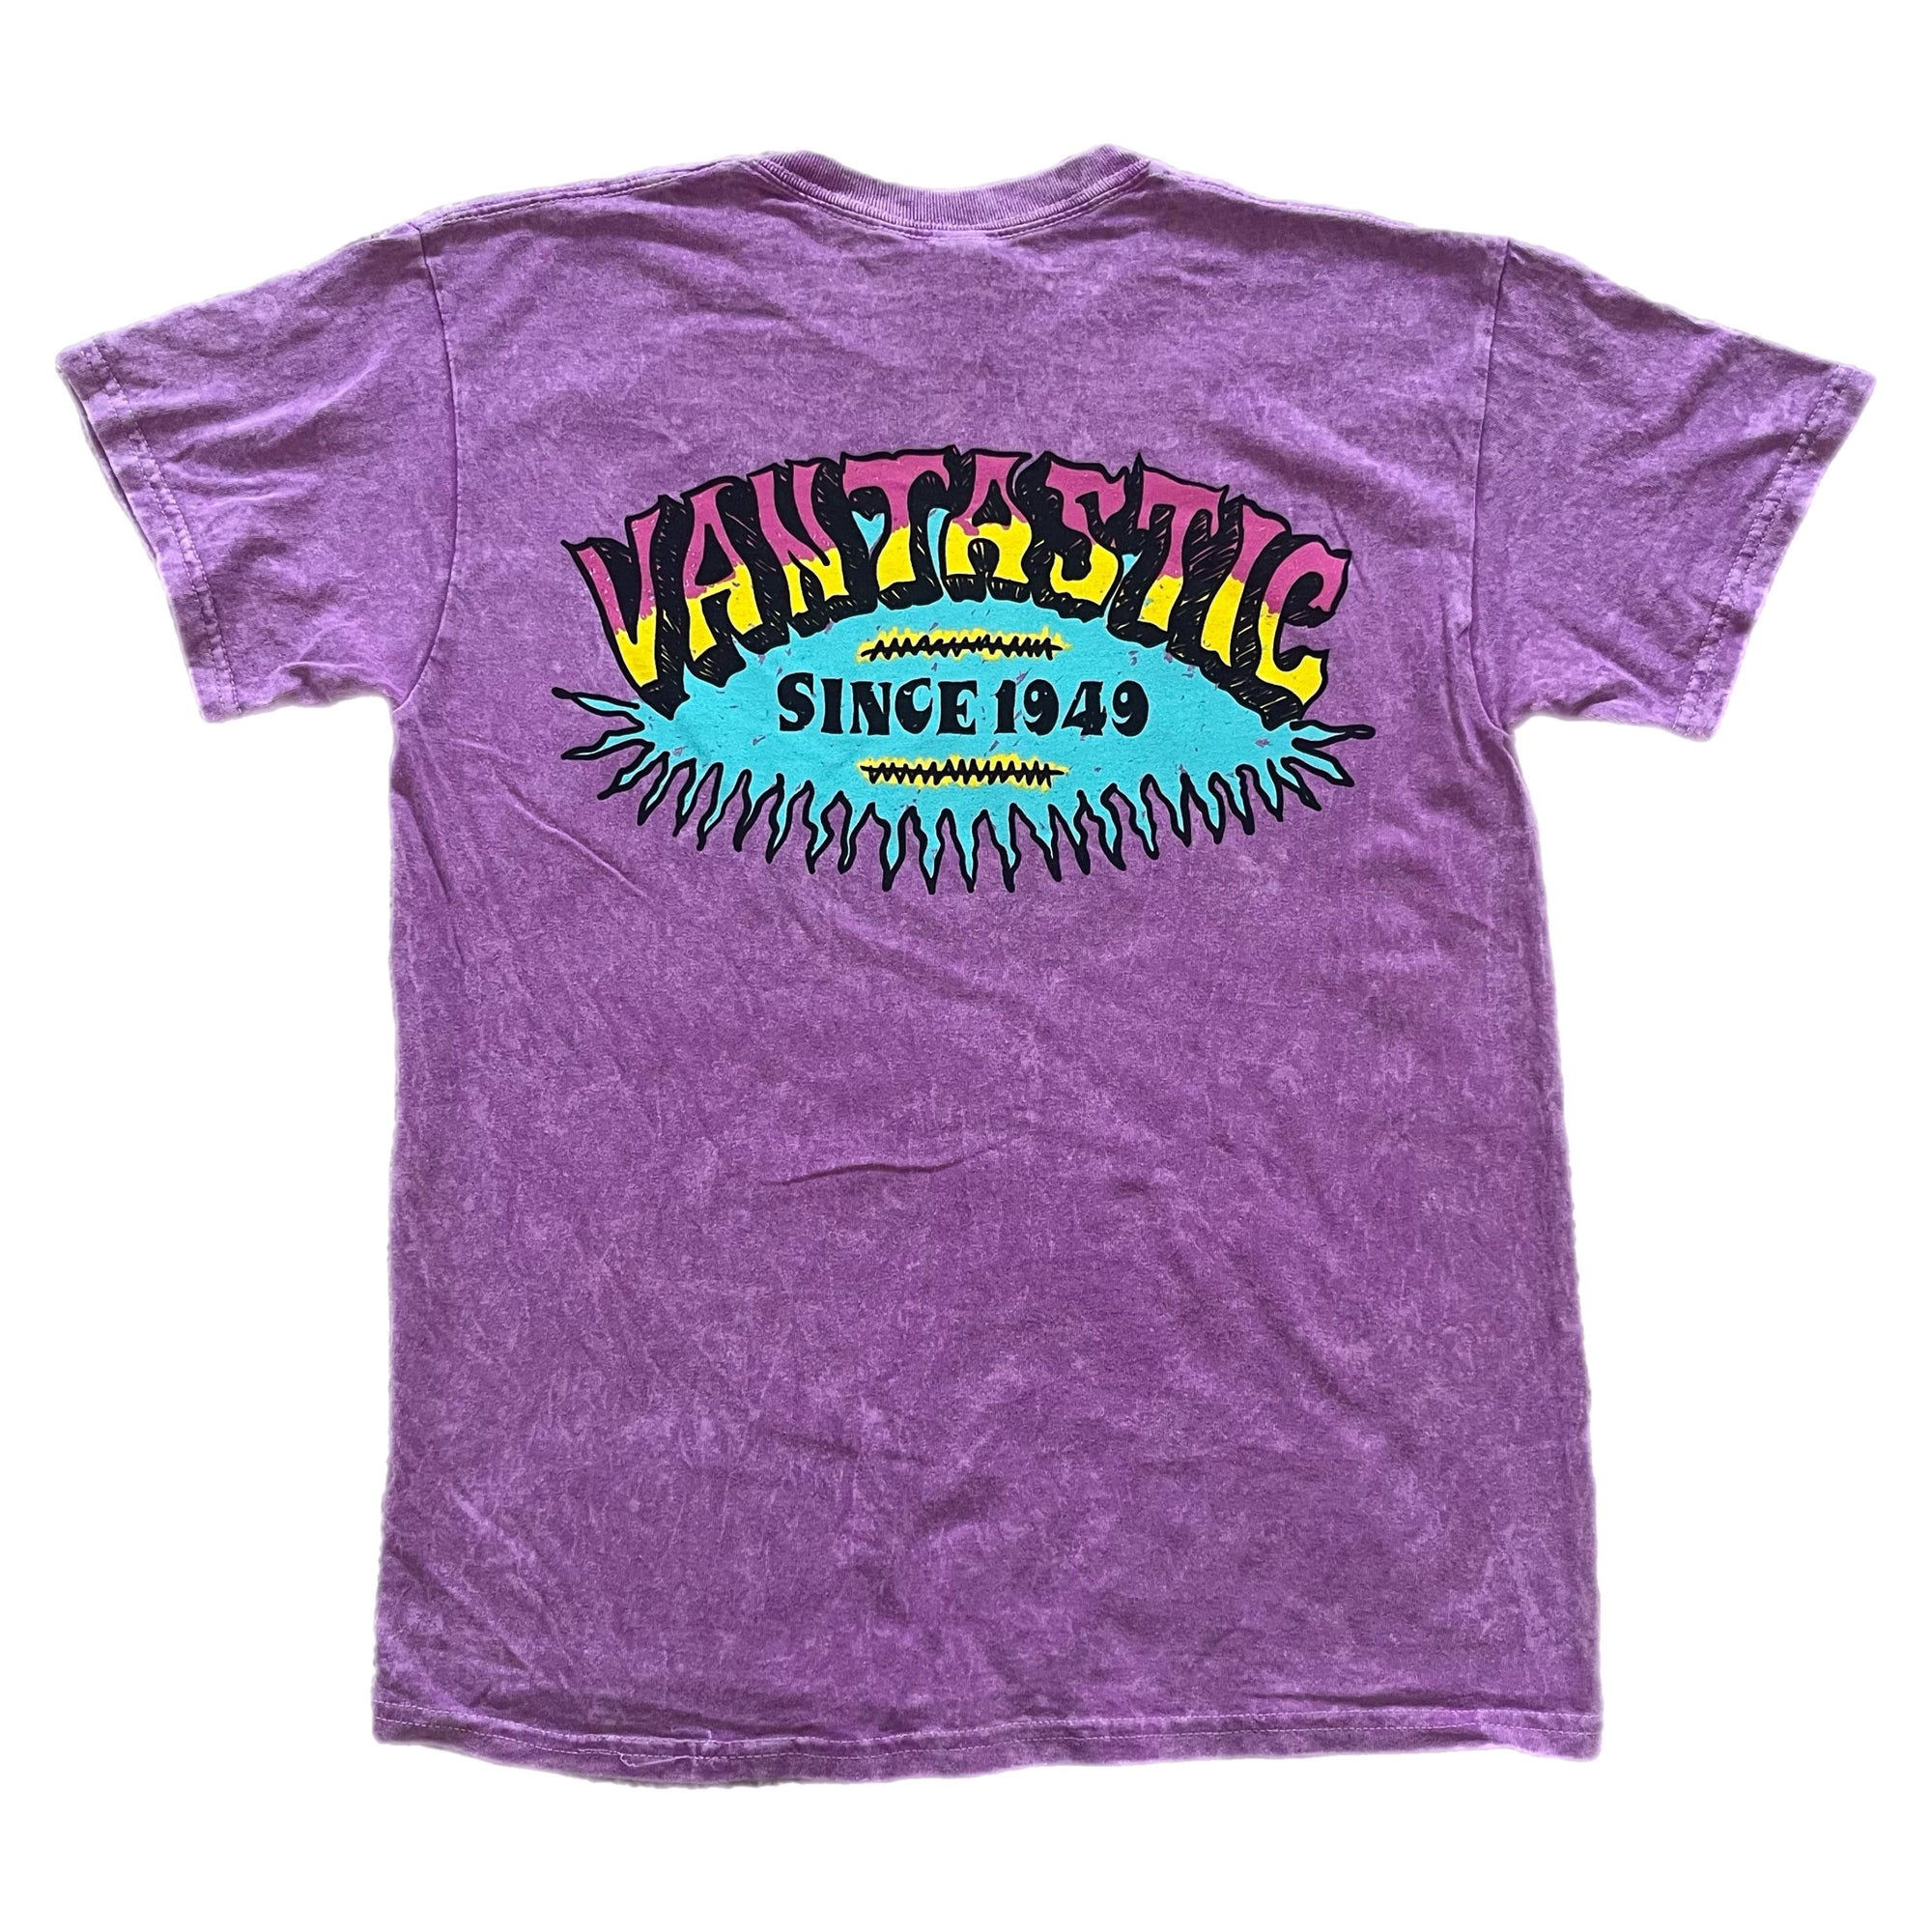 Vintage surf T-shirt - Washed purple